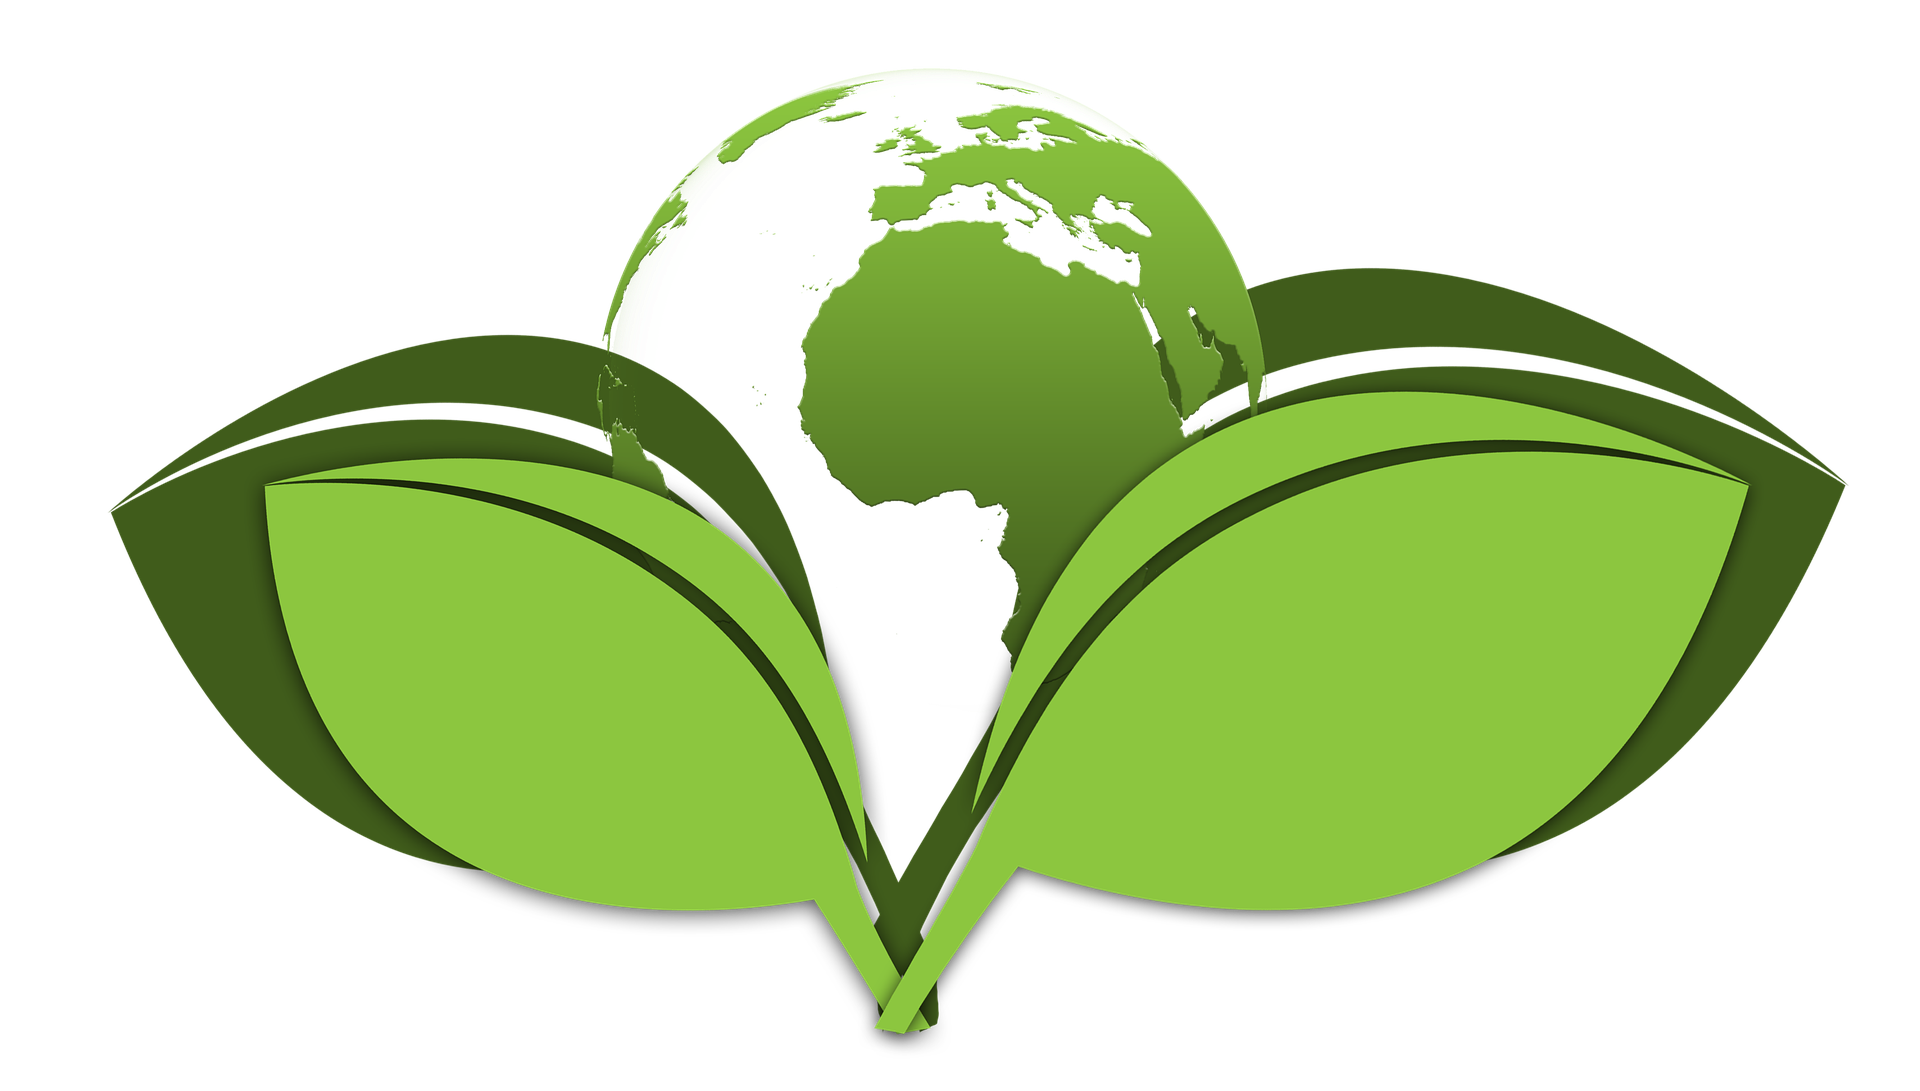 10 éves fenntarthatósági cselekvési tervet jelentett be a Diageo